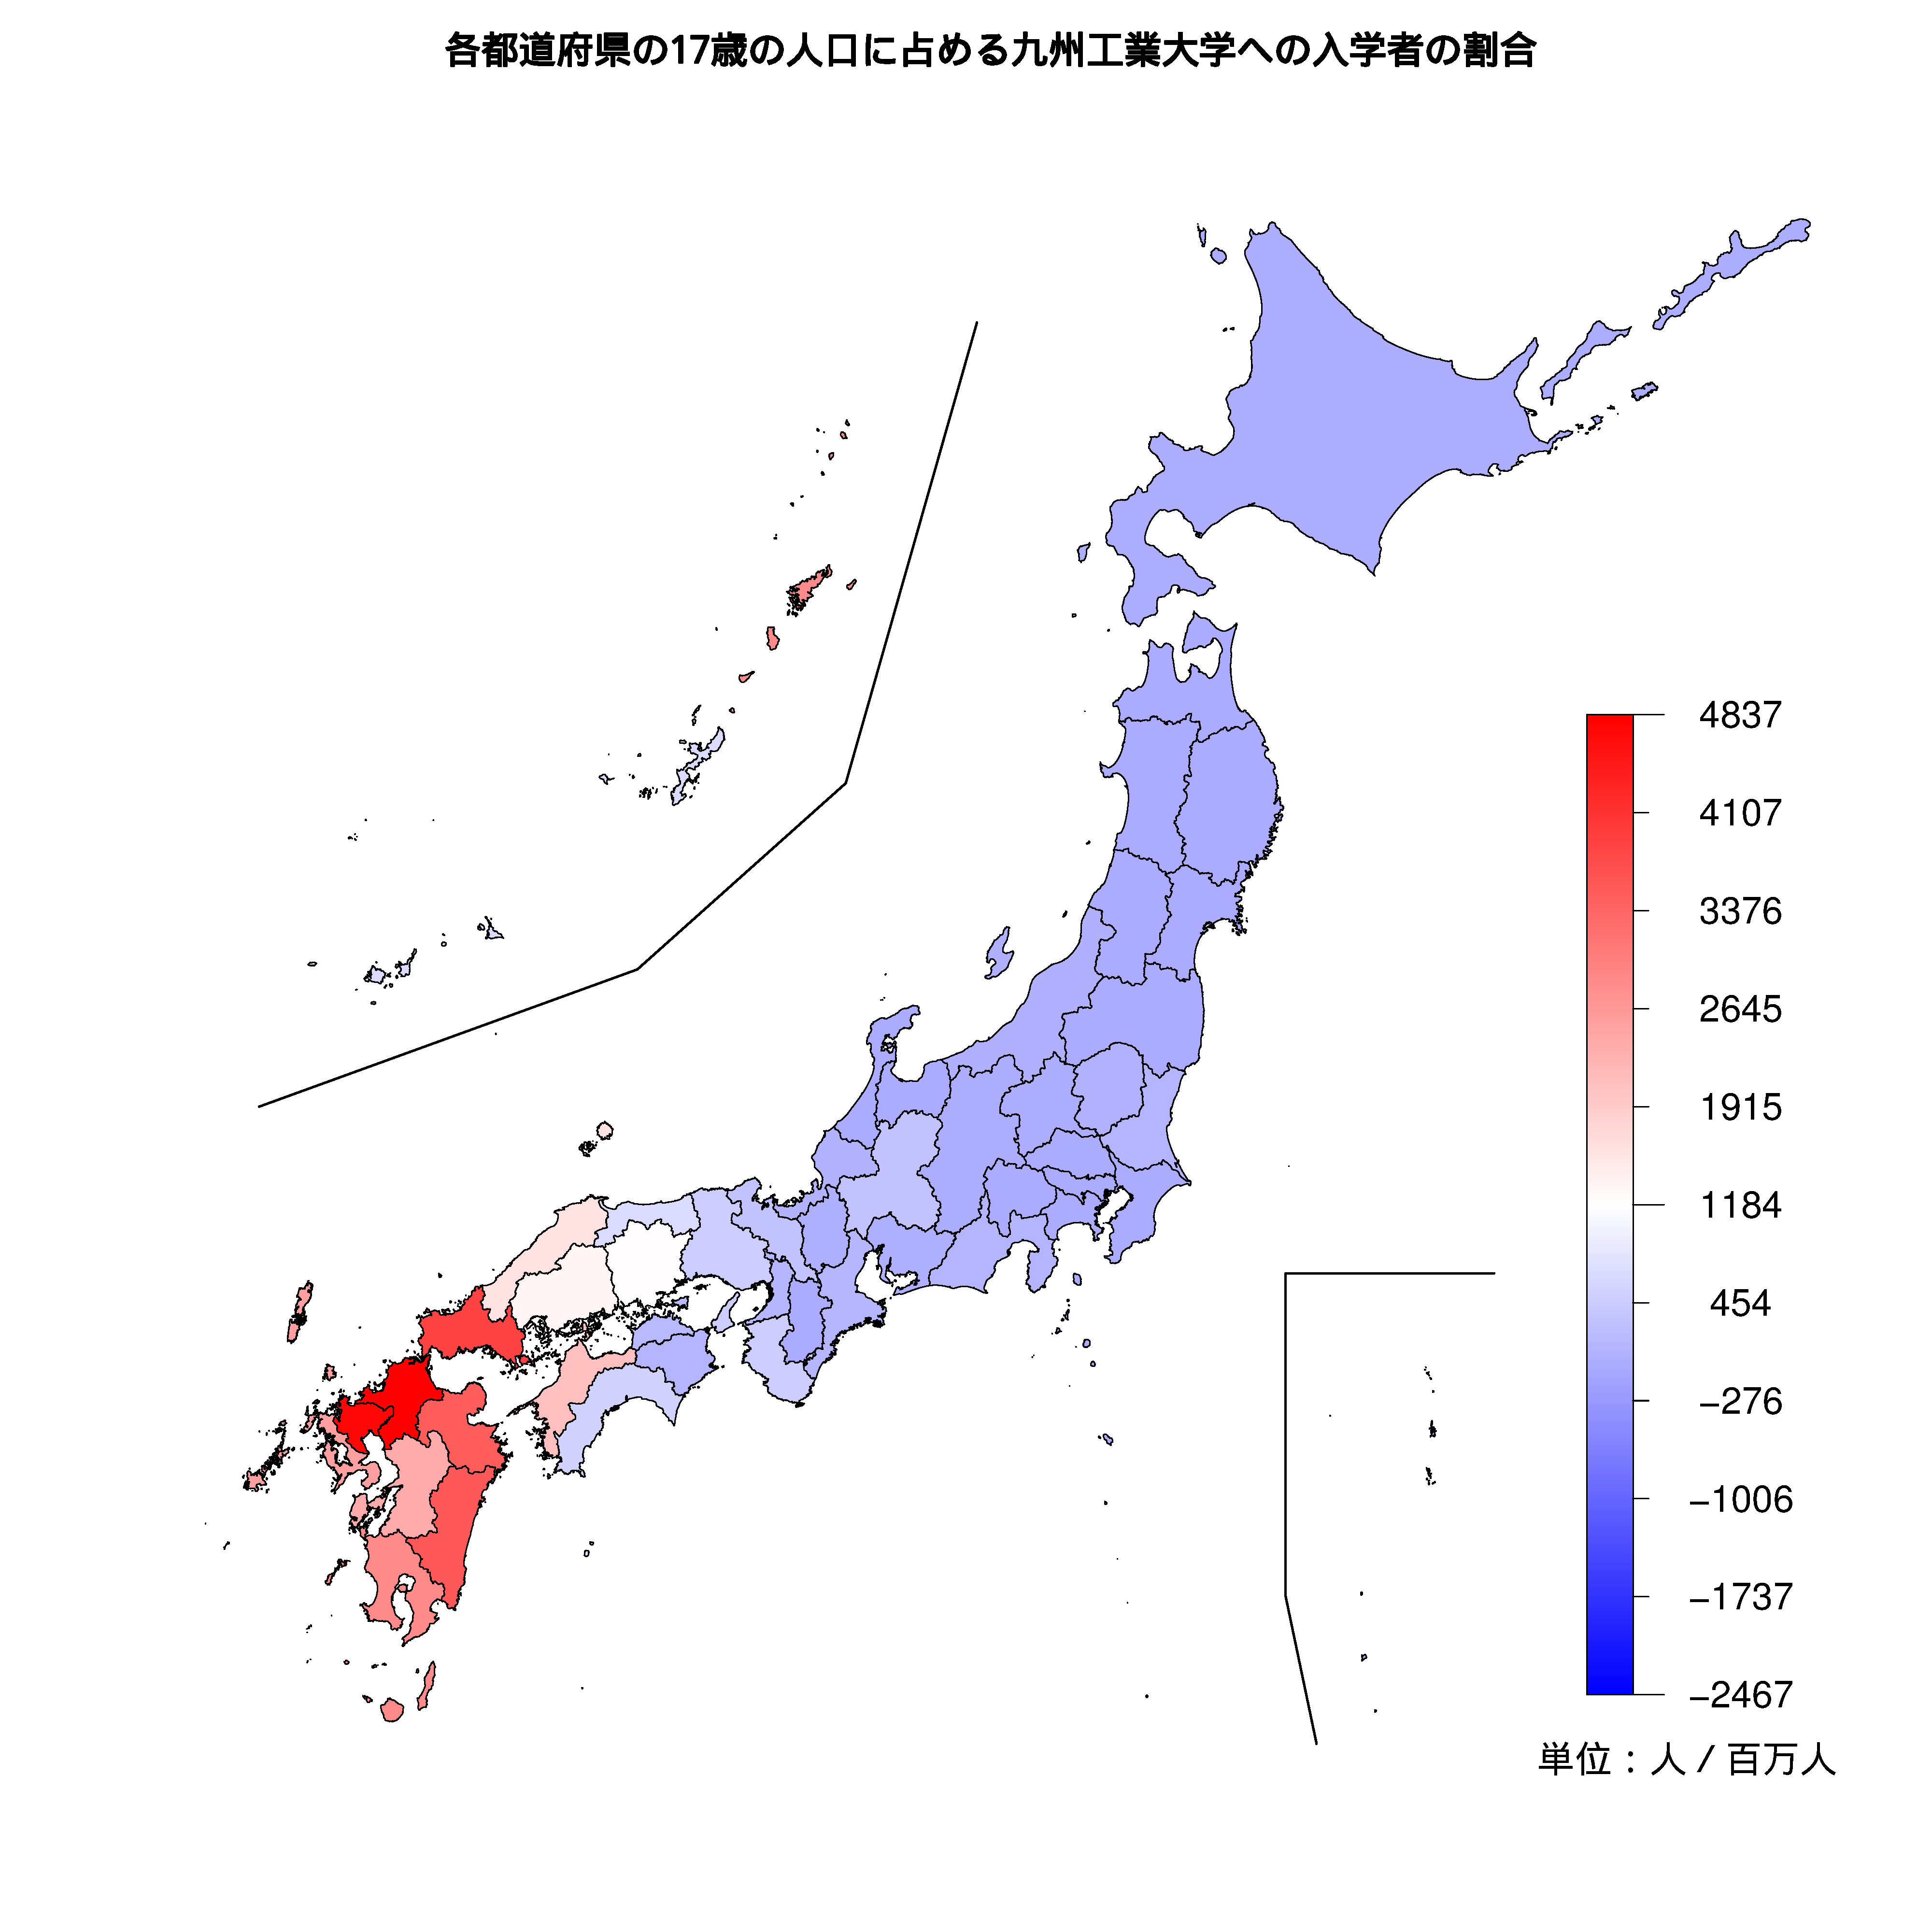 九州工業大学への入学者が多い都道府県の色分け地図